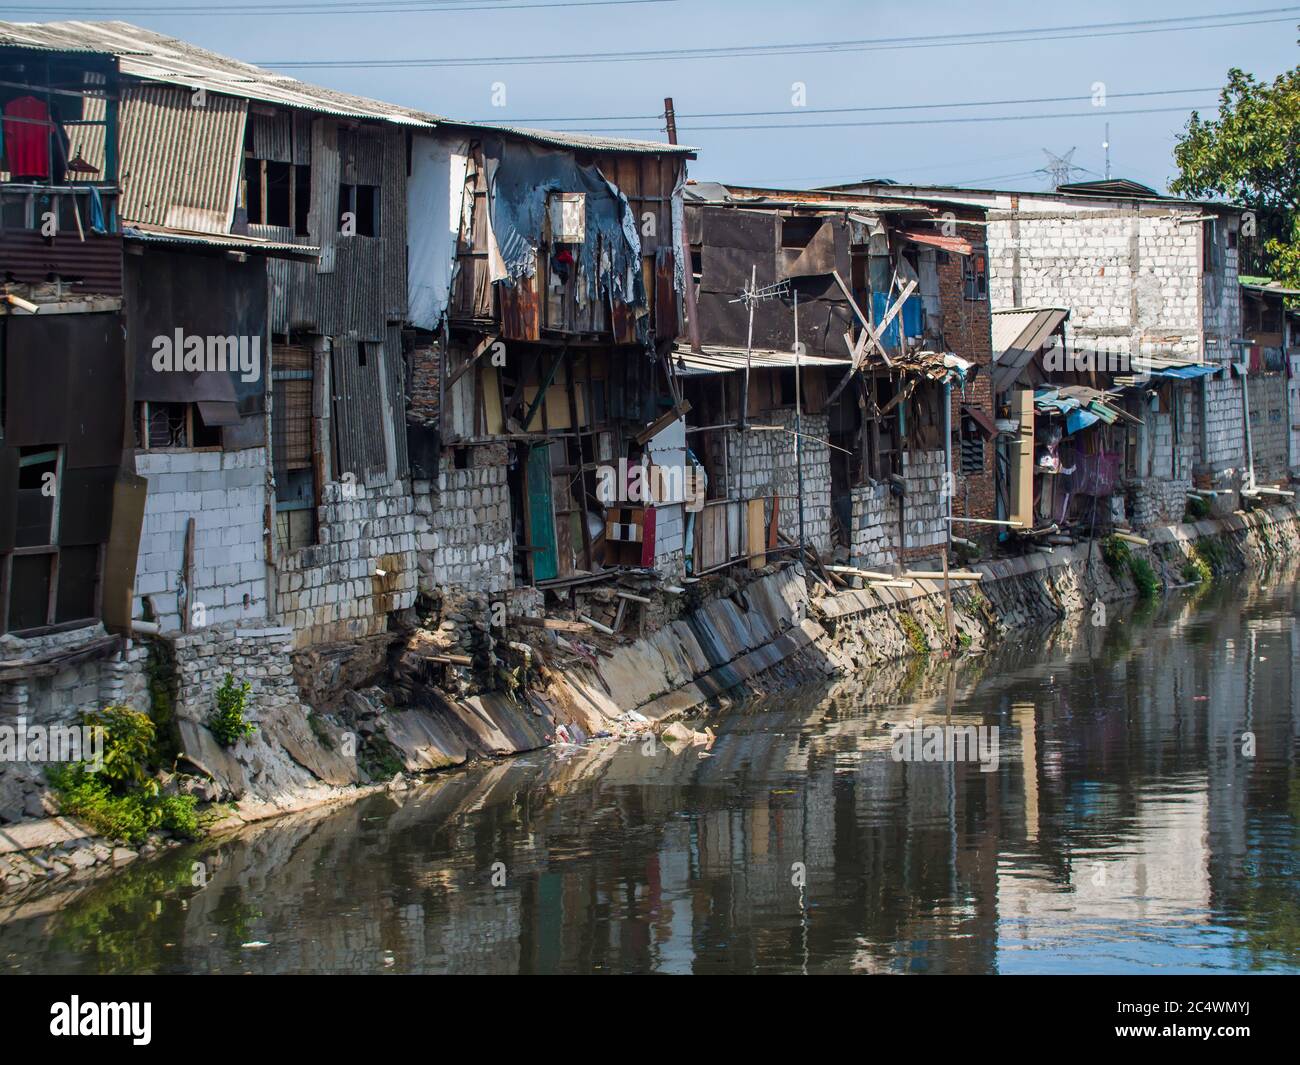 Jakarta Indonesia Slums